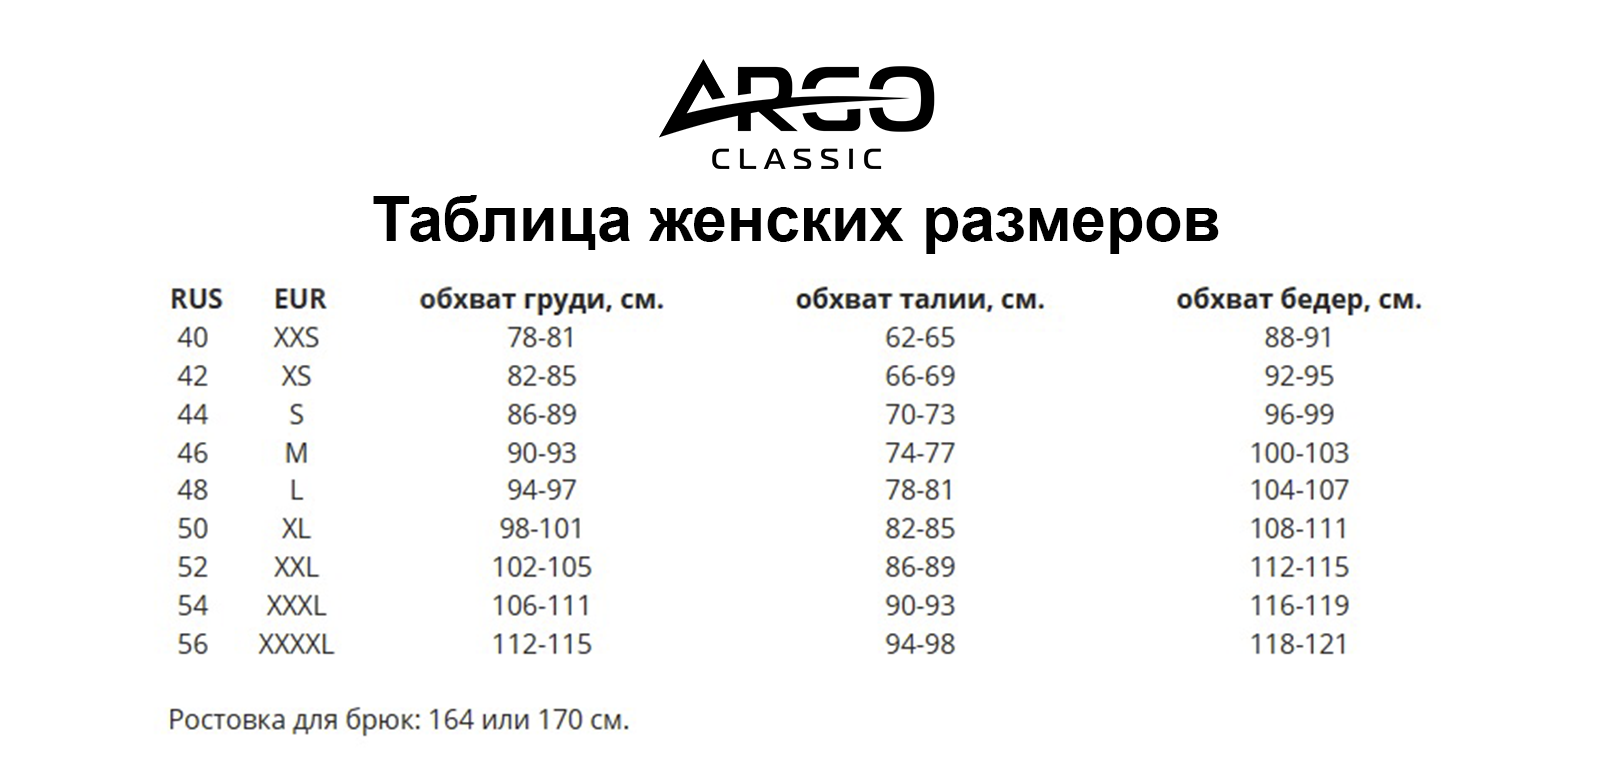 Футболка женская Argo Classic Top 625 белая 46 RU